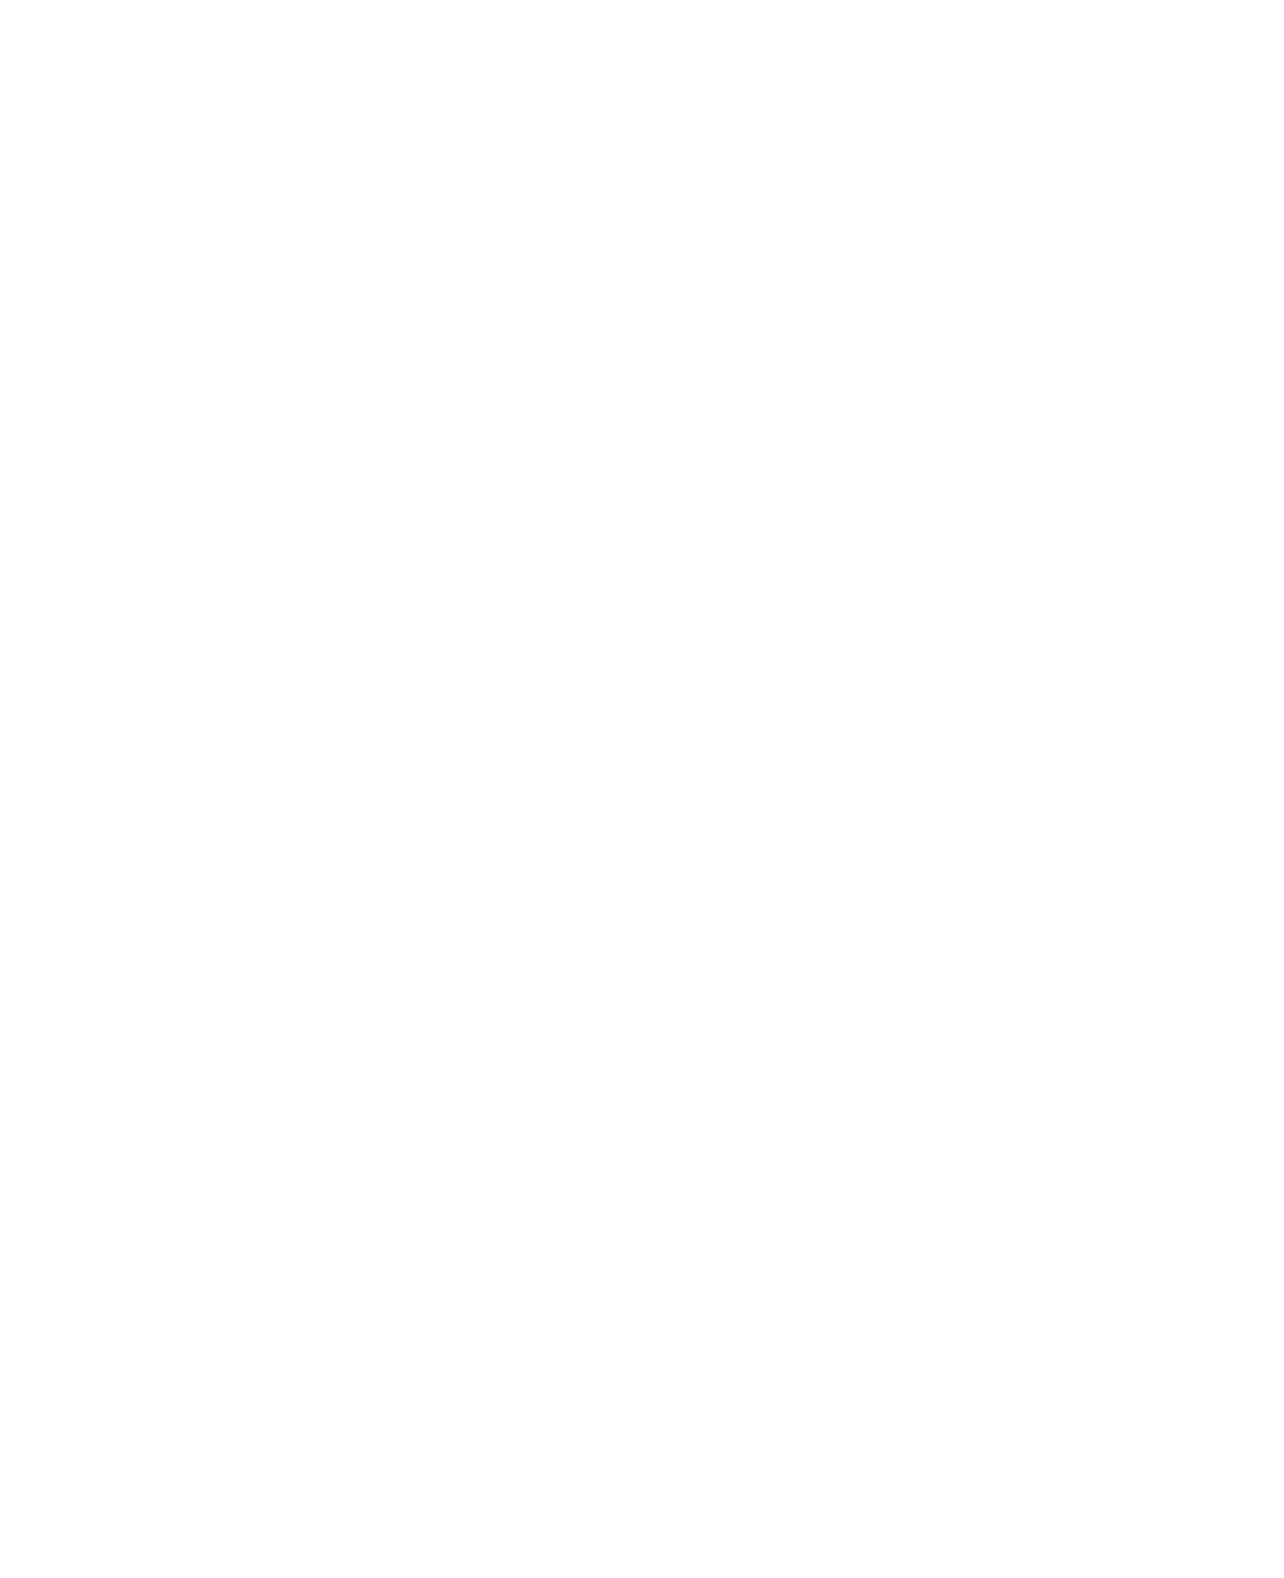 Legrand logo for dark backgrounds (transparent PNG)